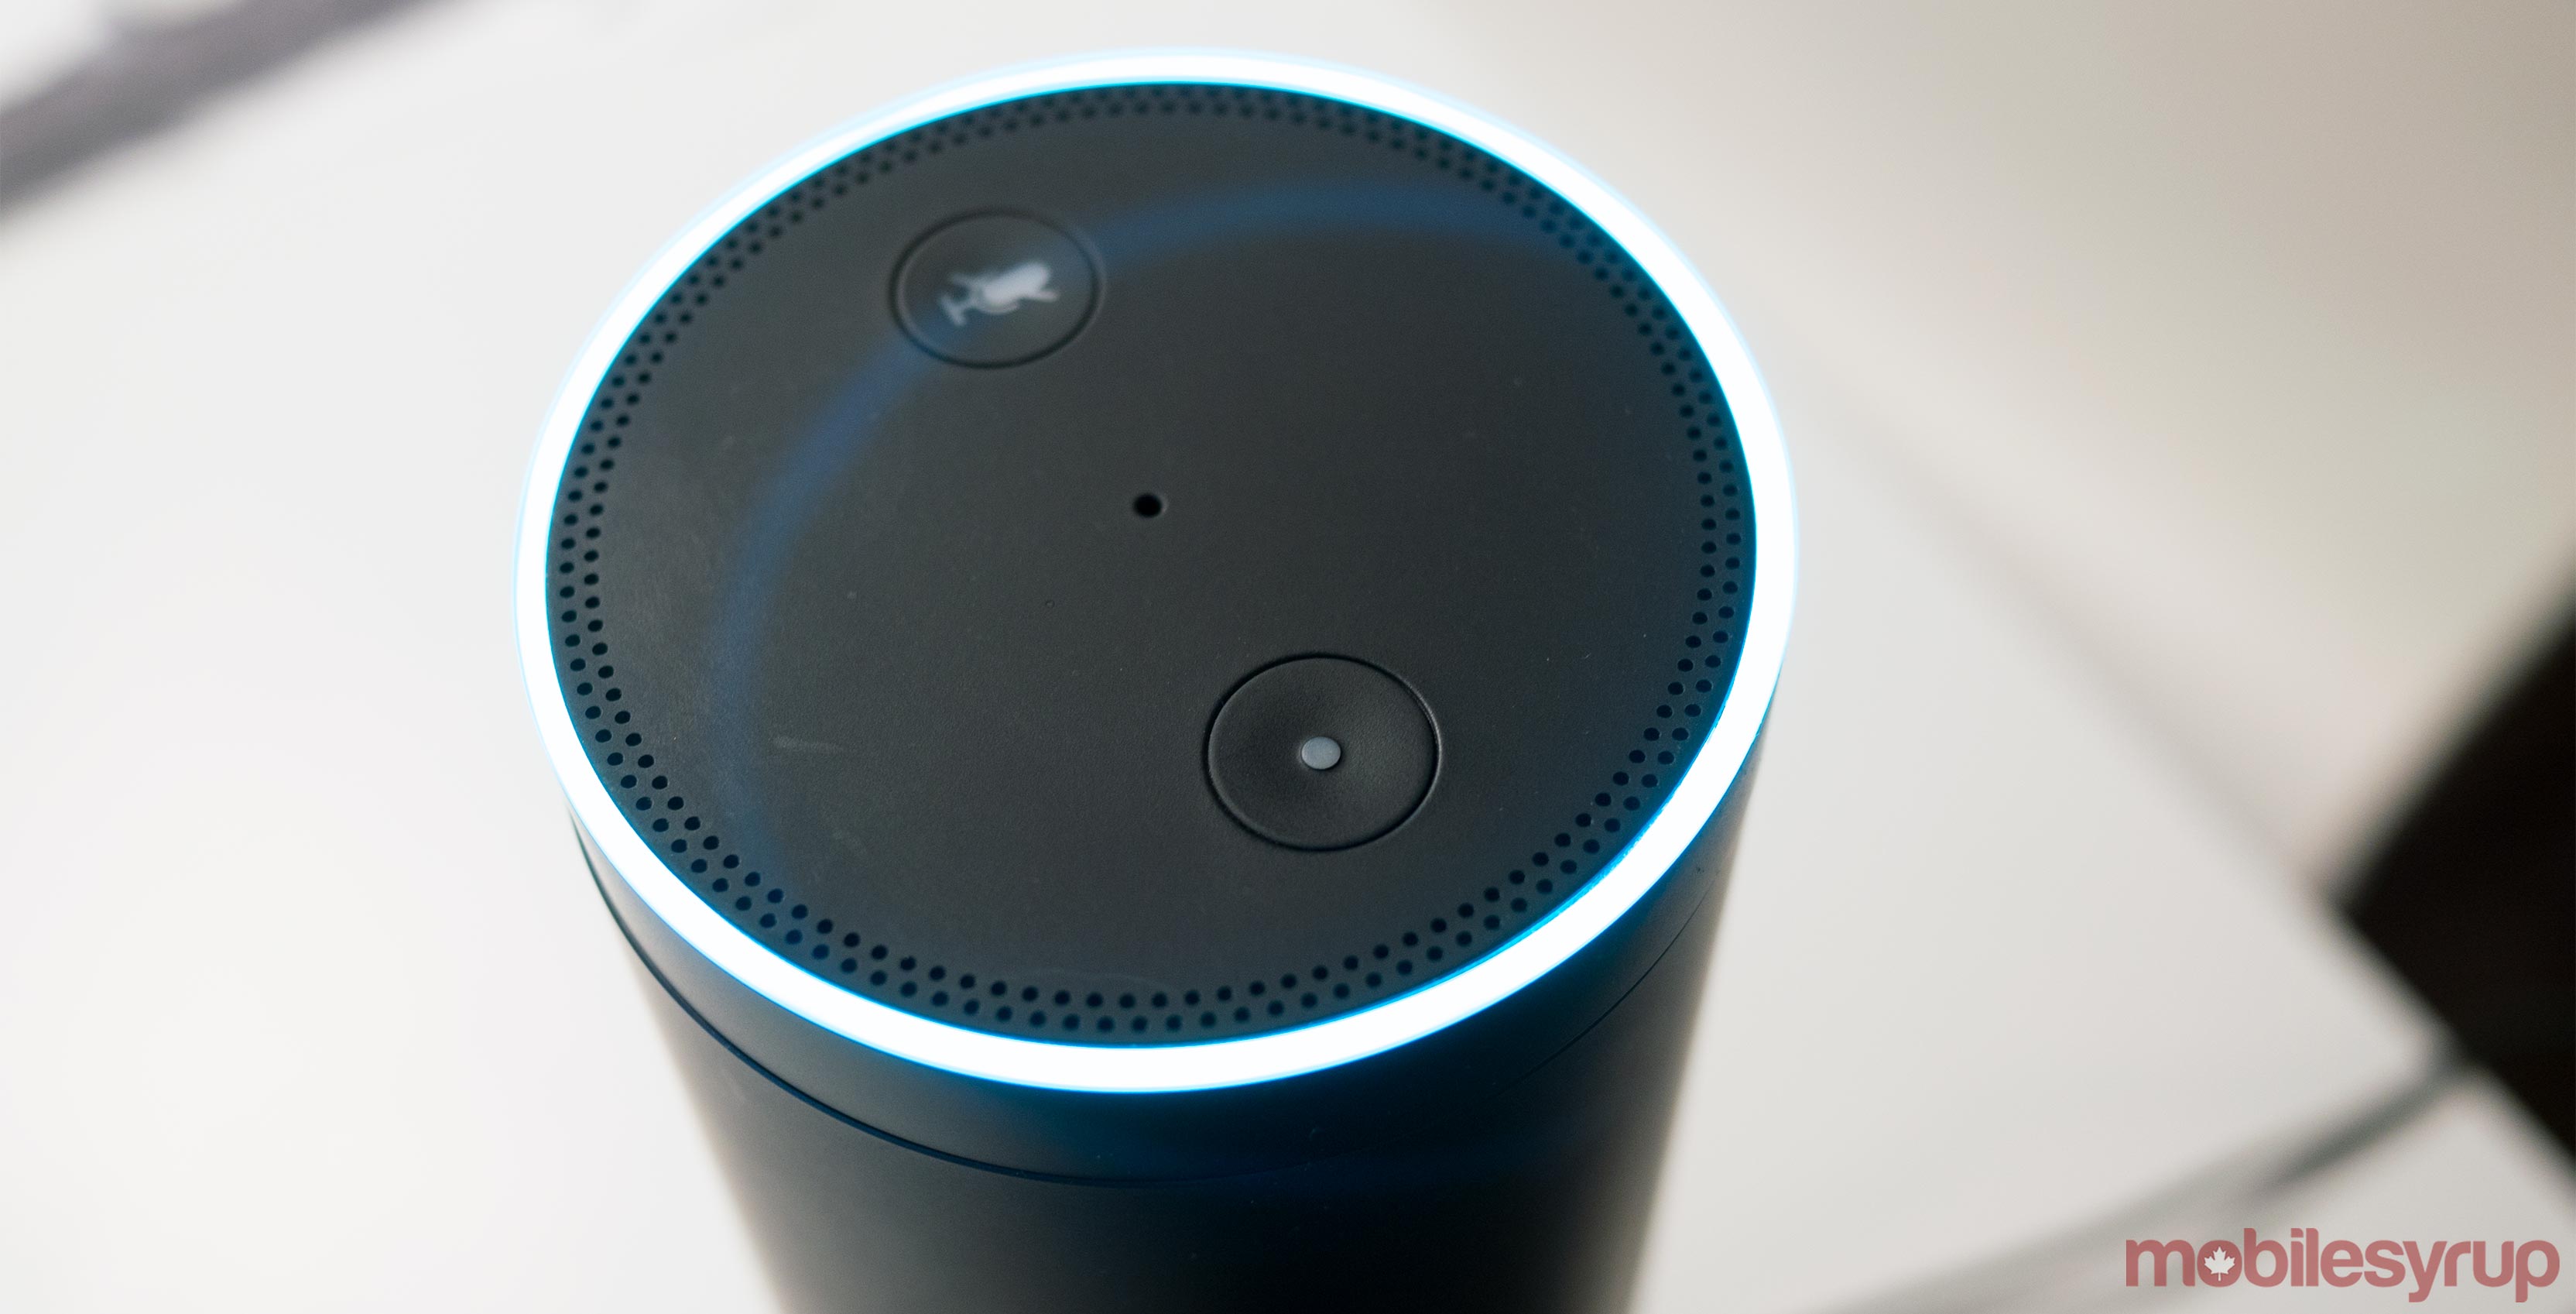 Amazon Alexa on a Amazon Echo